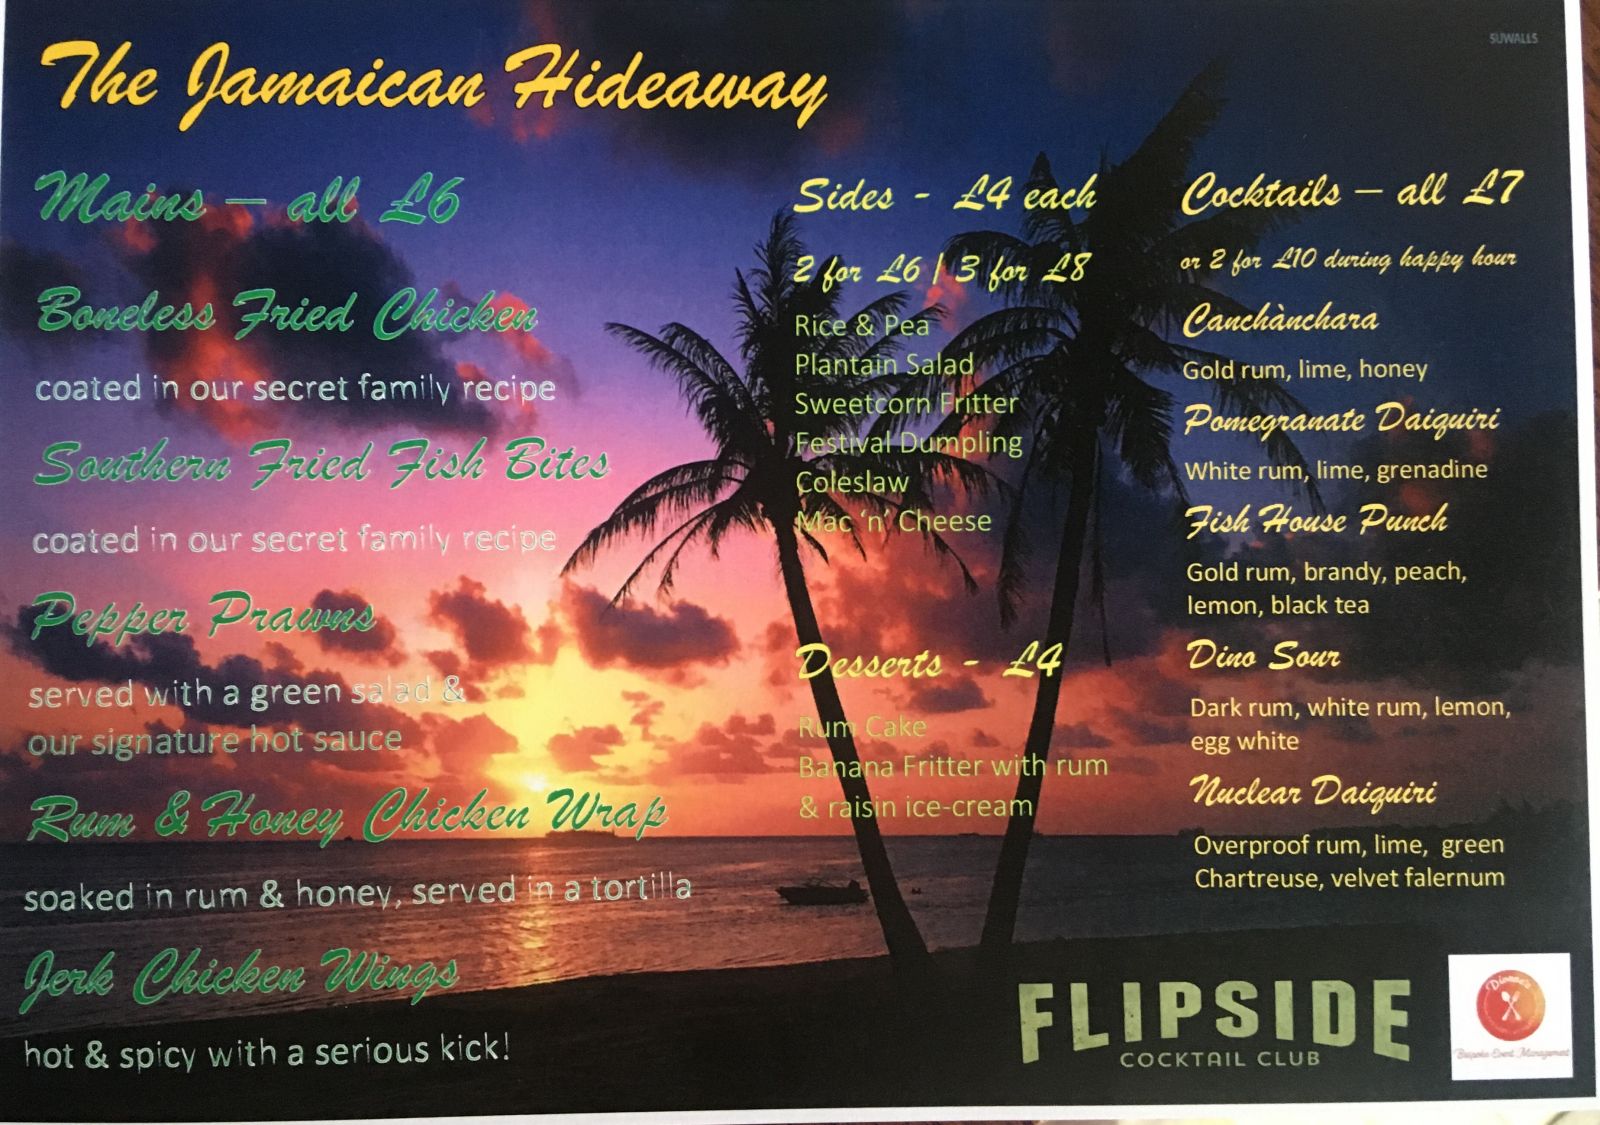 The full menu @ The Jamaican Hideaway.